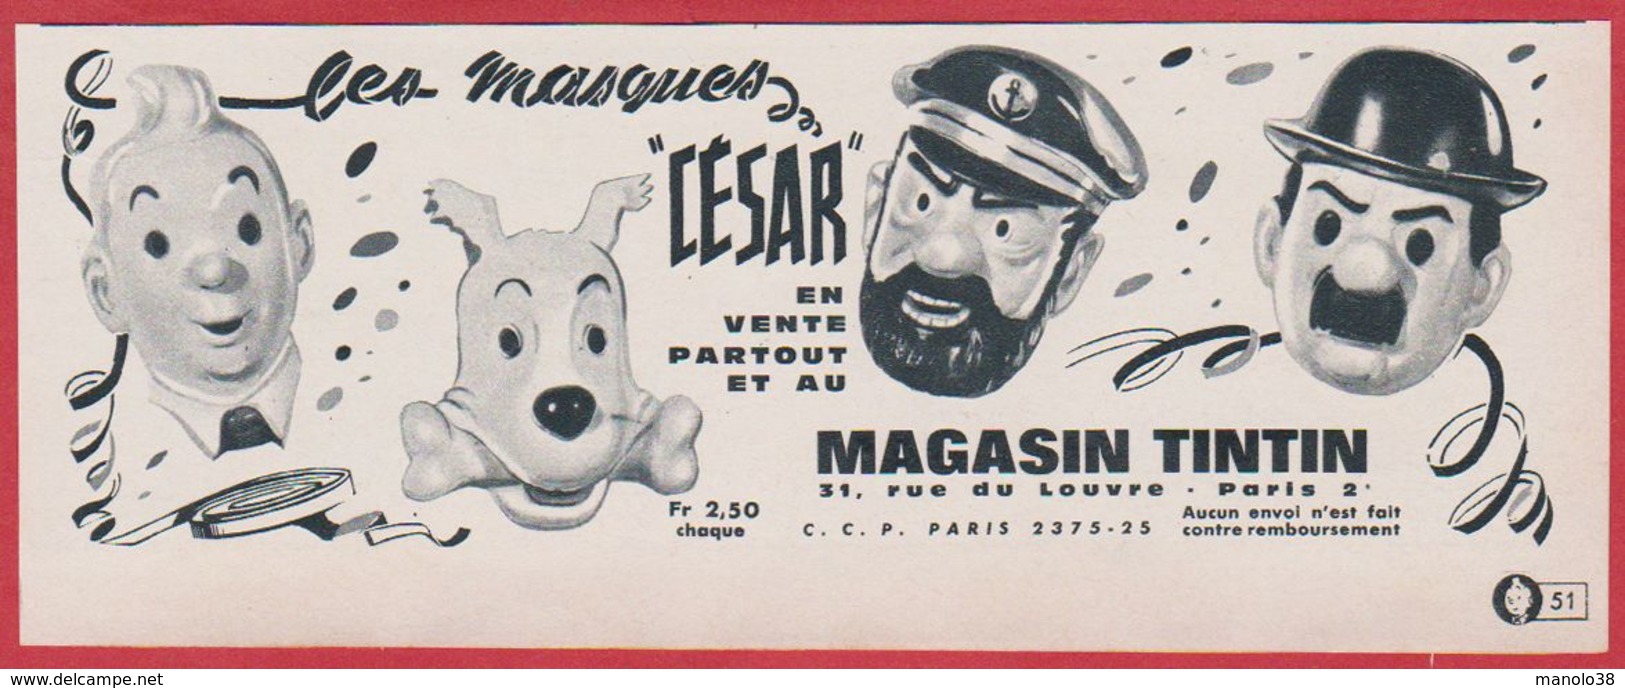 Les Masques " César ". Tintin, Milou, Le Capitaine Haddock, Dupont. Masque Enfant.  1965. - Advertising